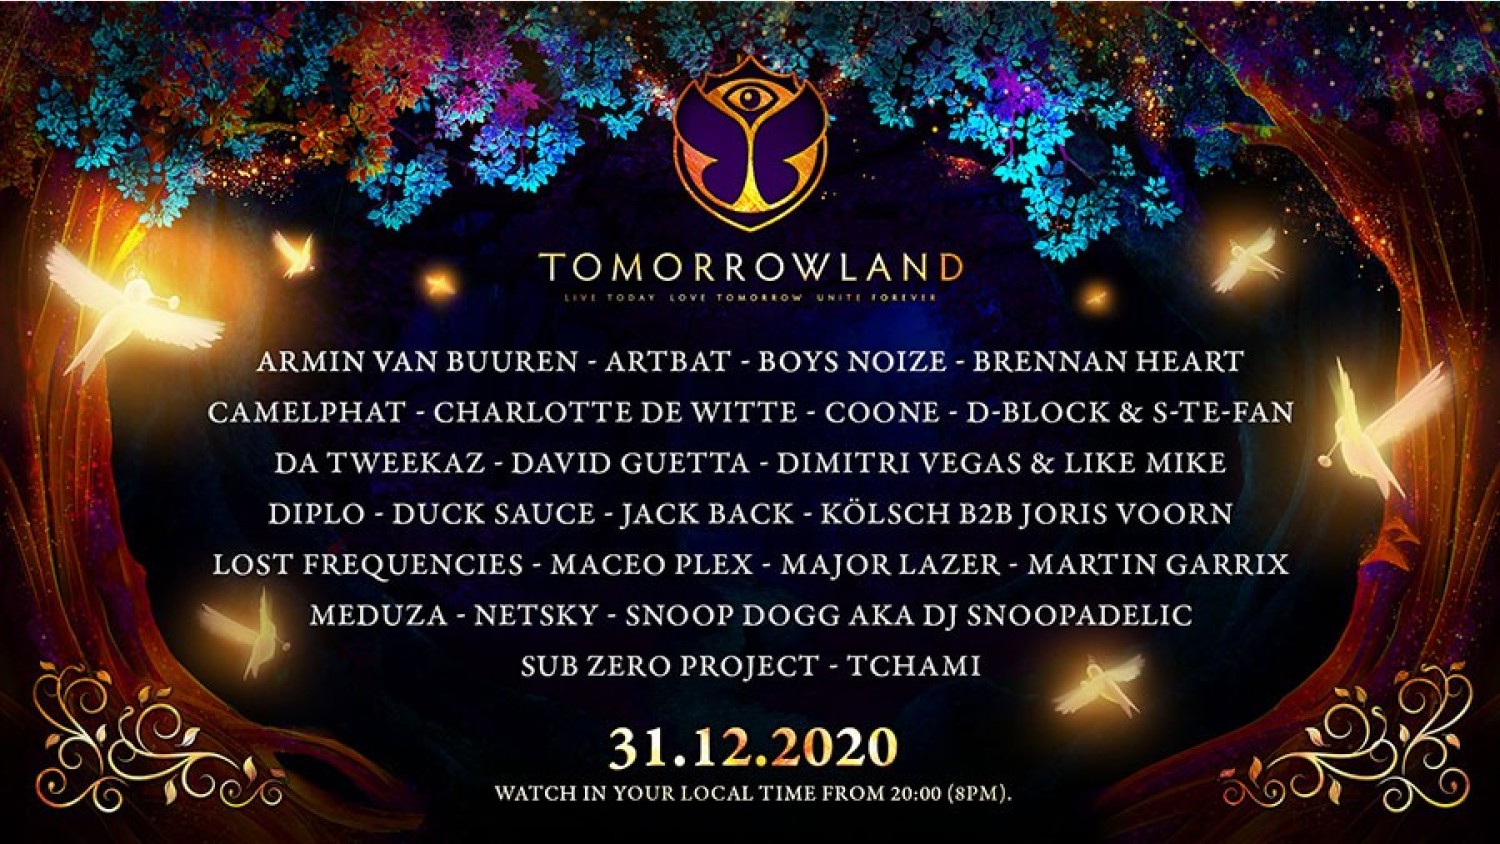 Party nieuws: Tomorrowland kondigt magisch Oudejaarsfeest aan